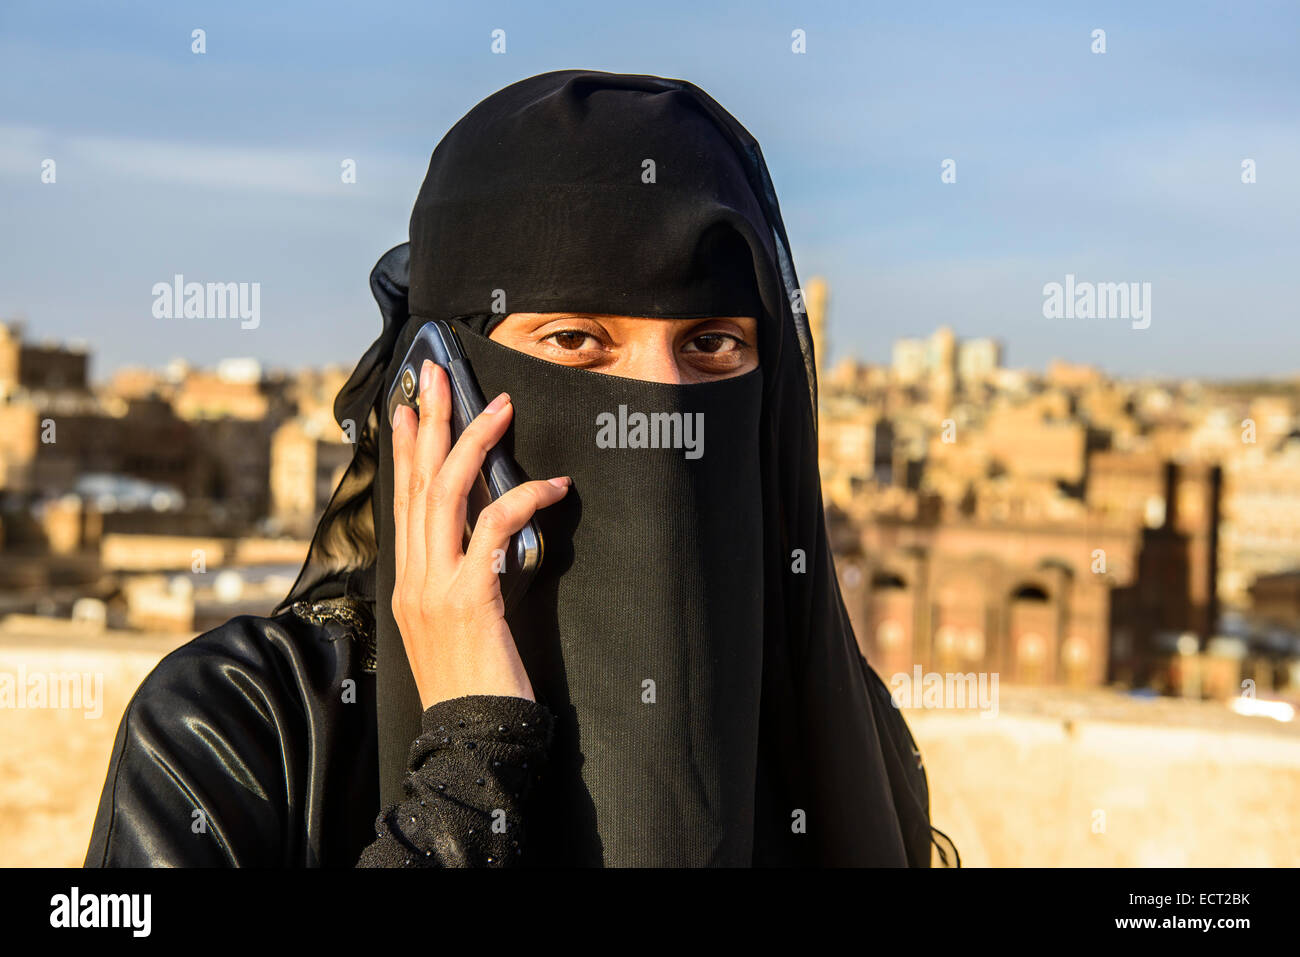 Velò giovane donna sul suo cellulare, nella città vecchia, Sana'a, Yemen Foto Stock